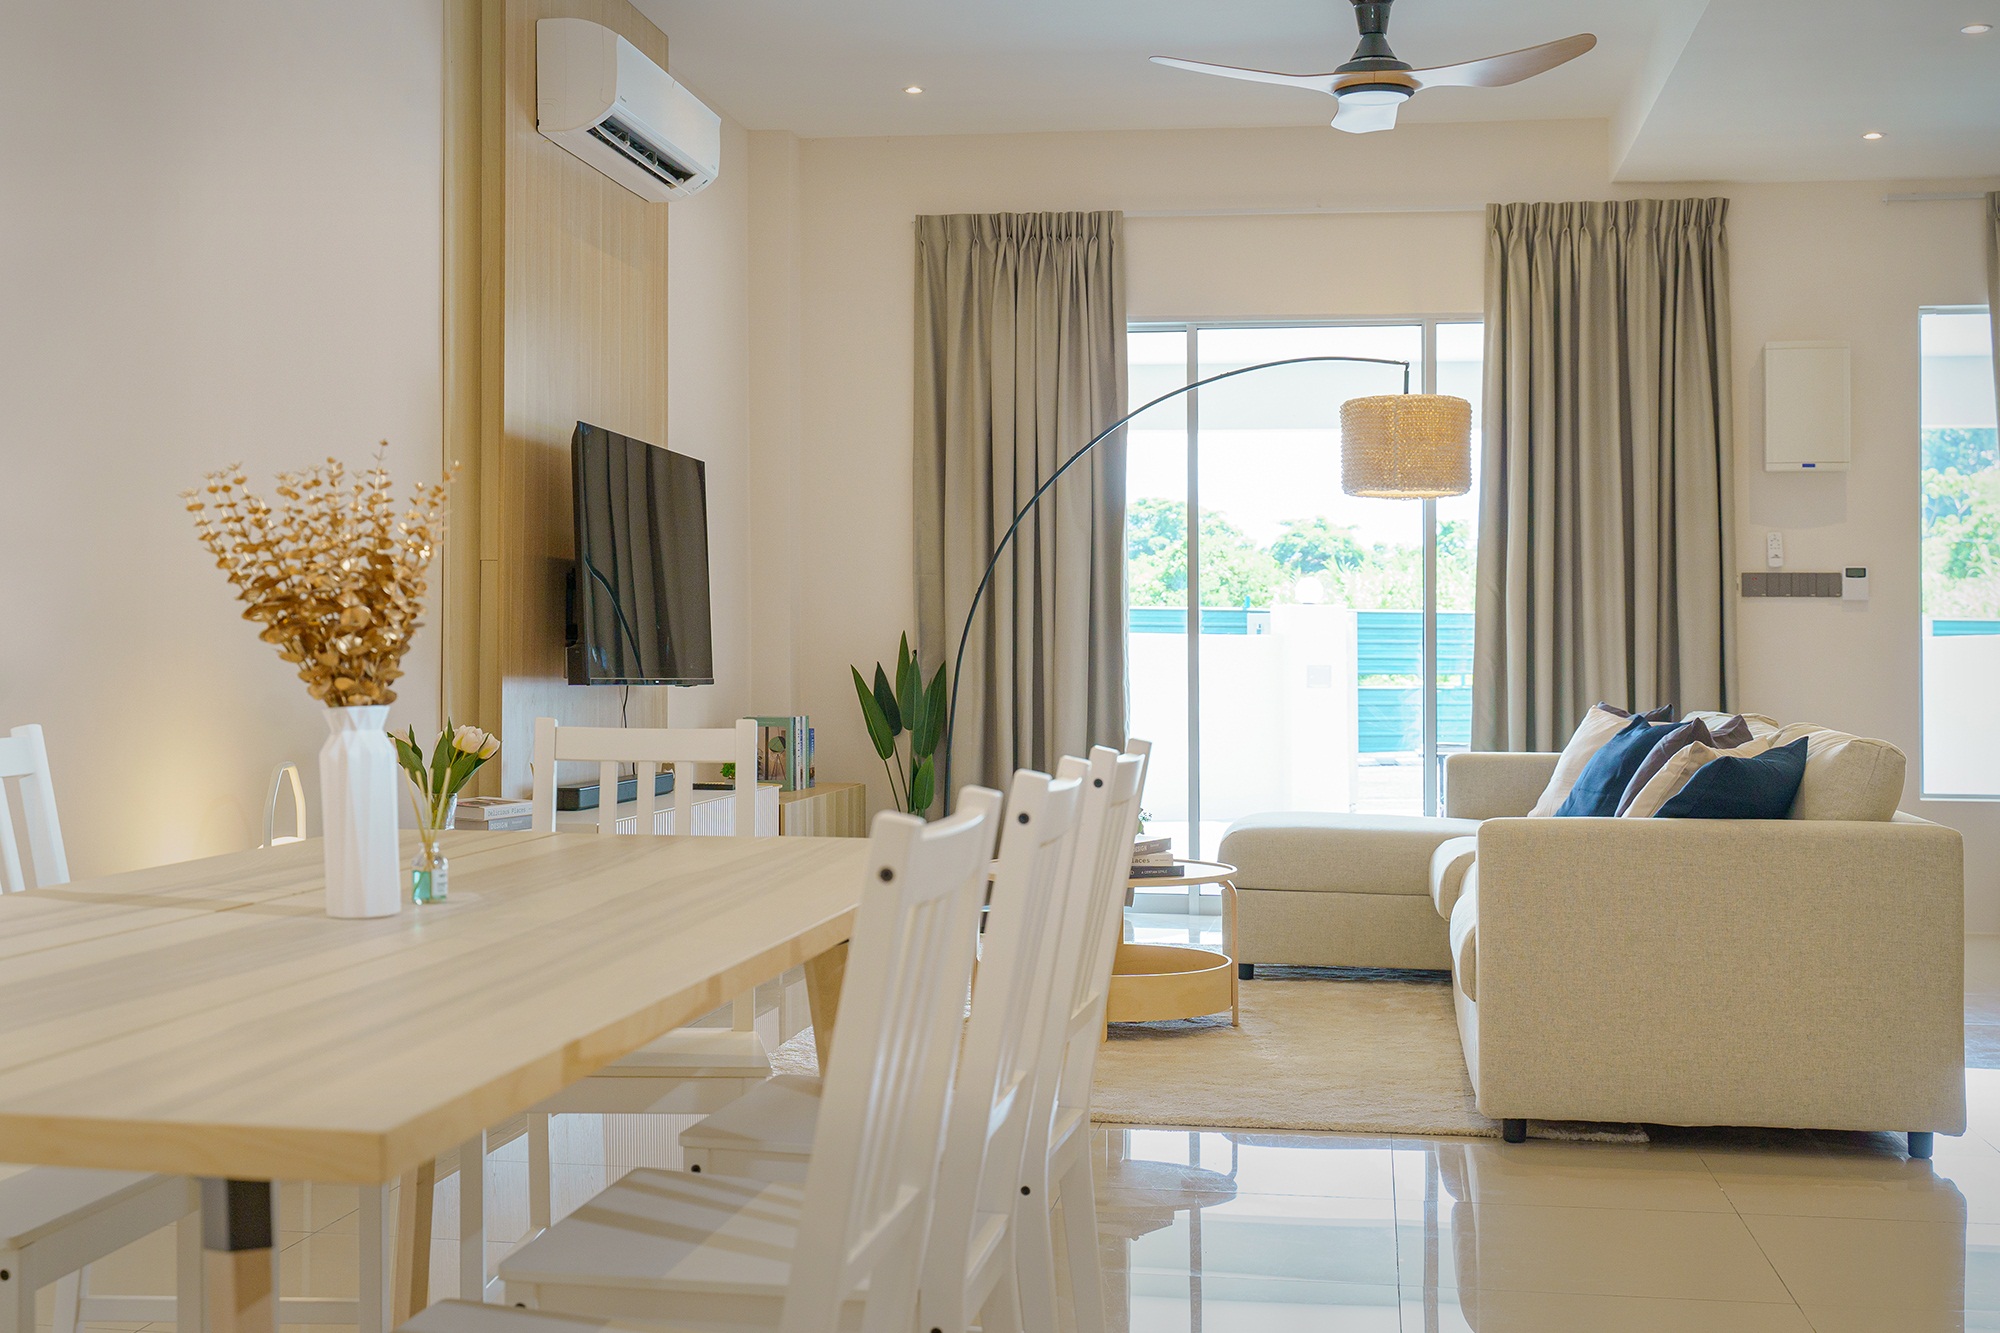 家具与装饰搭配让整个客厅充满温暖的氛围。